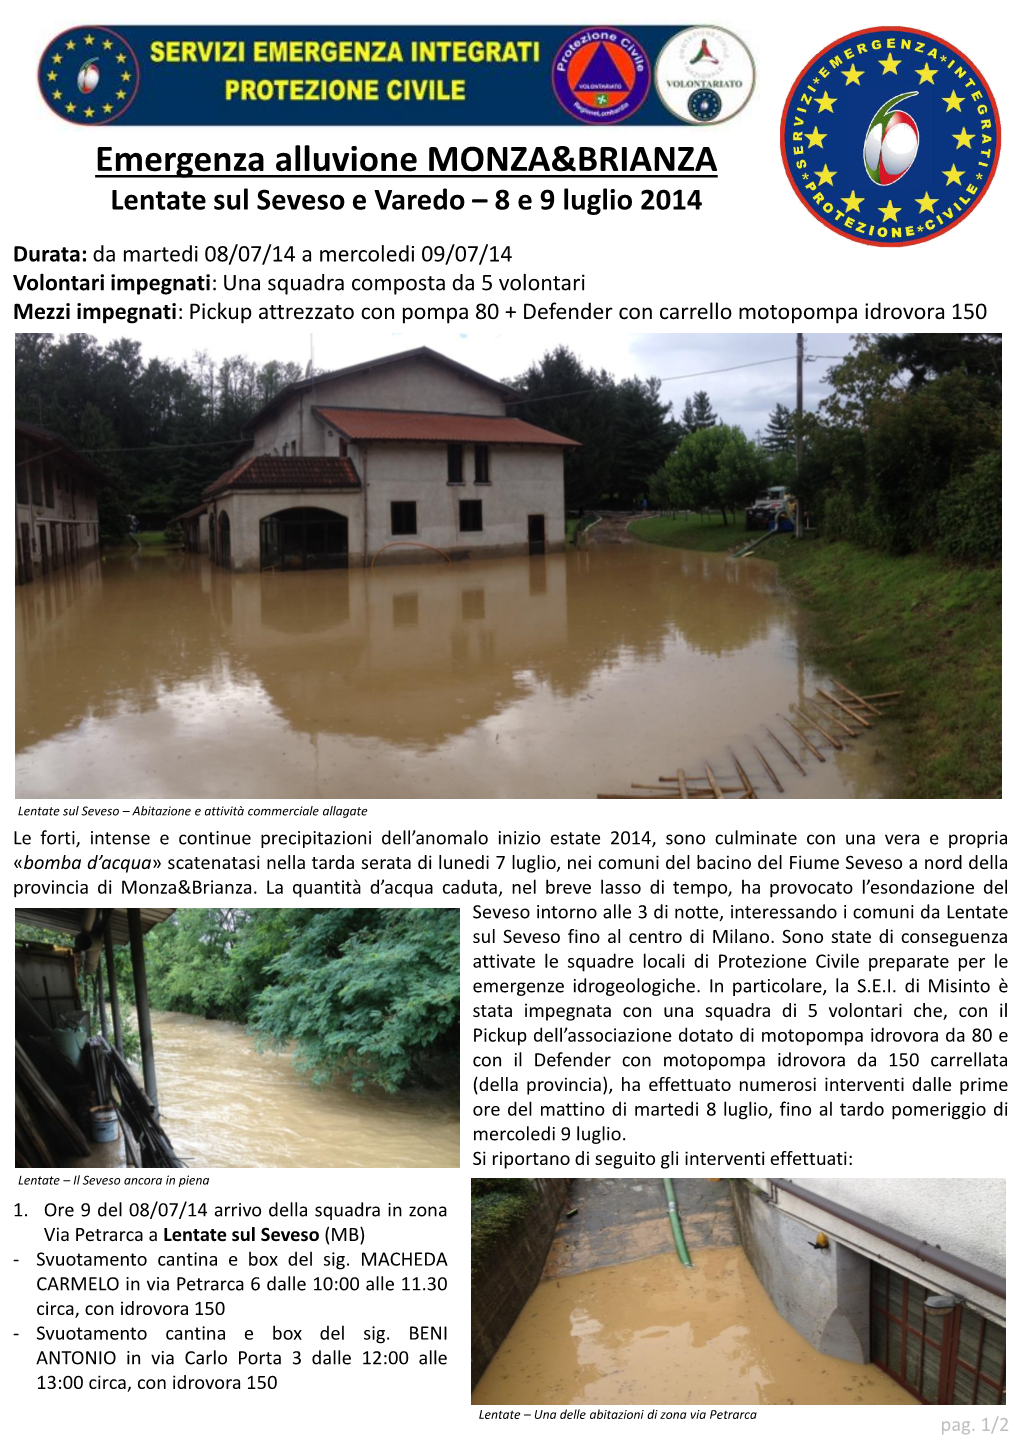 Emergenza Alluvione MONZA&BRIANZA Lentate Sul